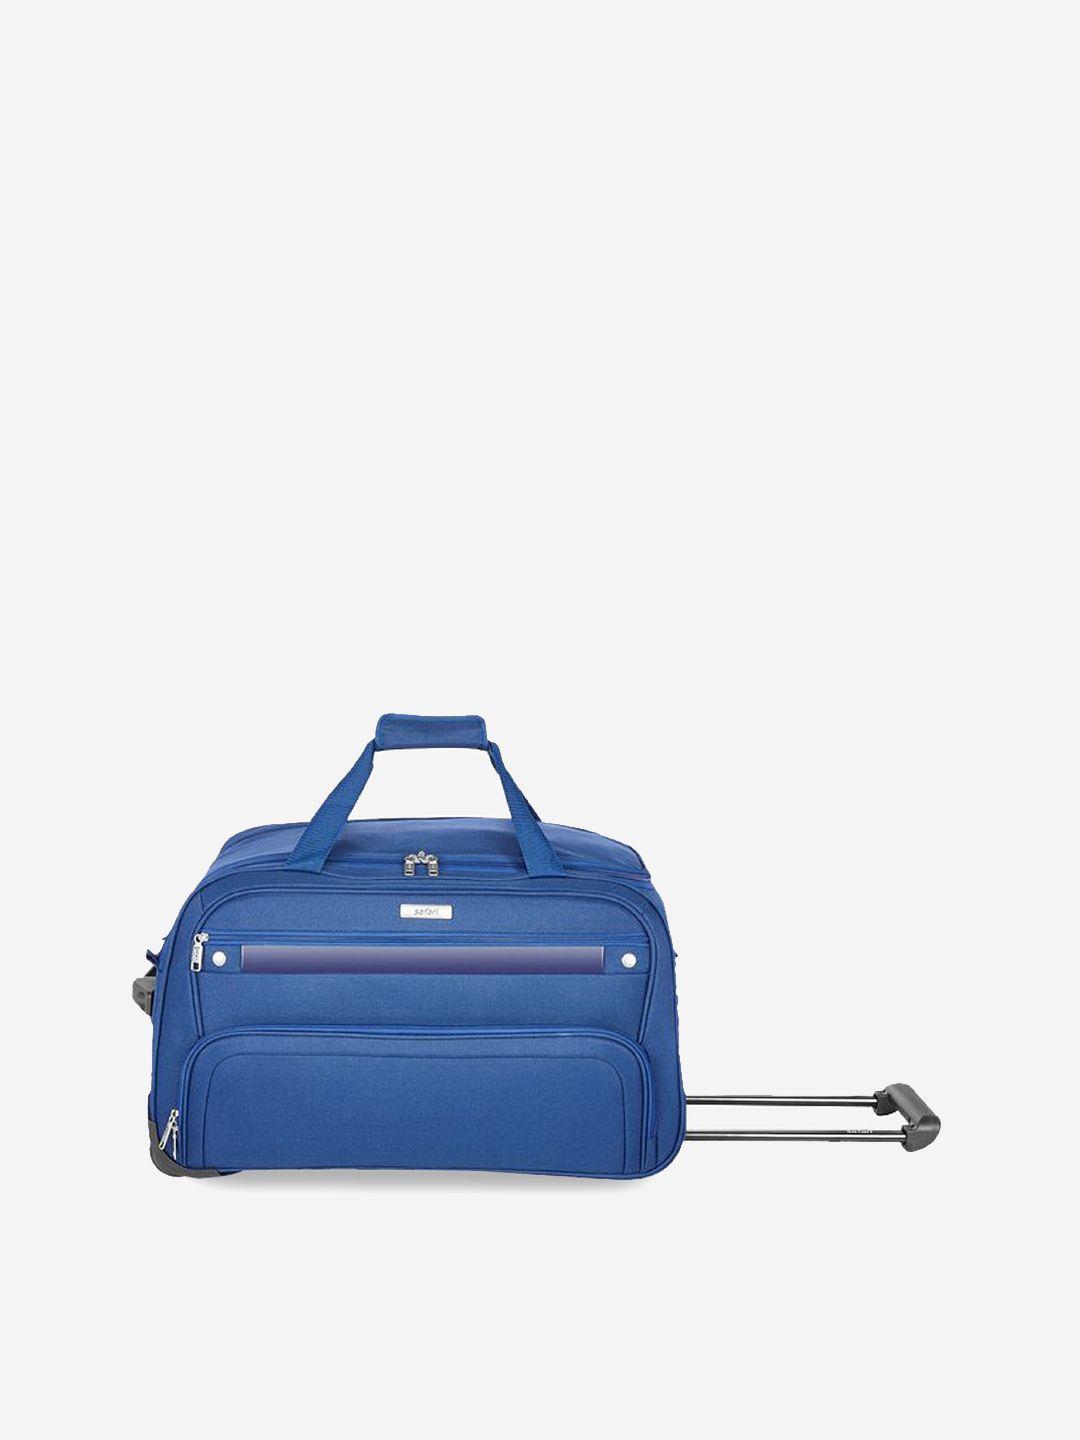 Safari Rolling-Sided Medium Duffle Trolley Bag